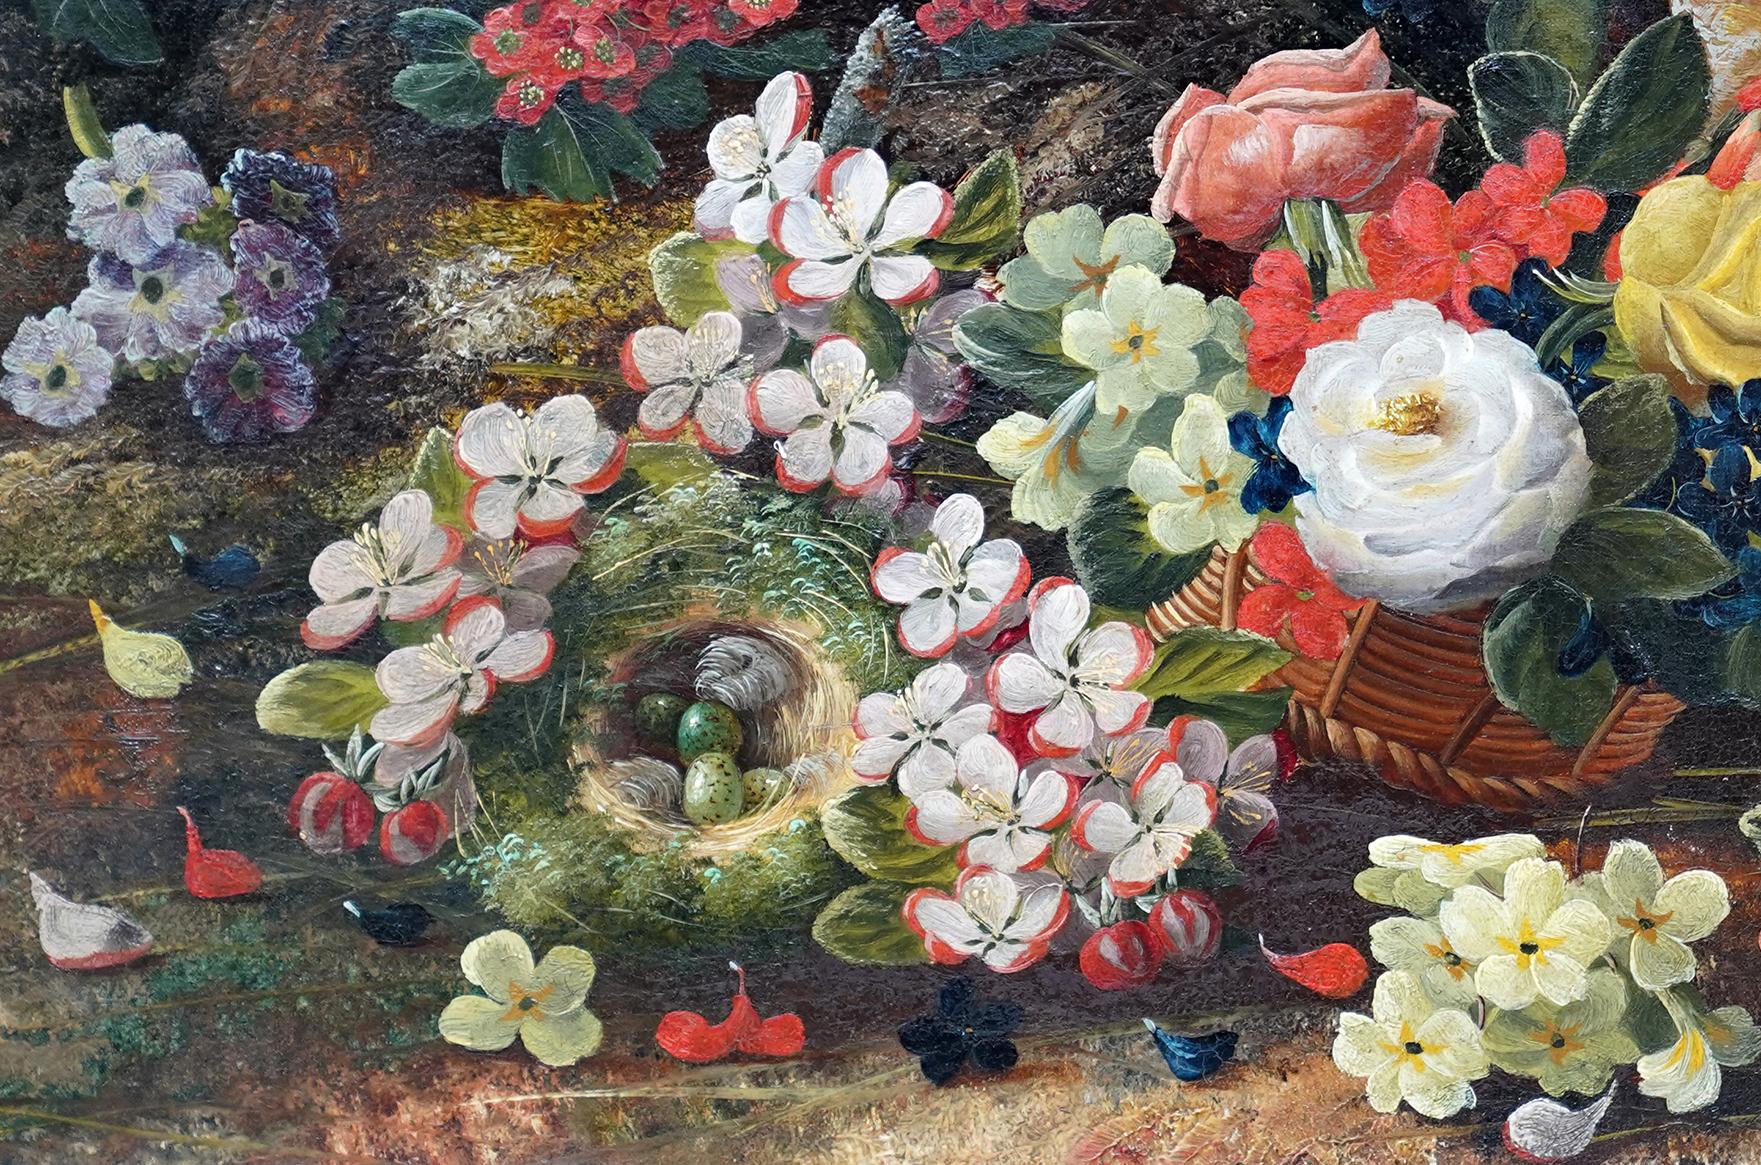 Cette étonnante nature morte florale victorienne britannique est l'œuvre de l'artiste Henry John Livens, né au XIXe siècle. Peinte en 1880, cette composition florale colorée a pour cadre le sol et les berges d'une forêt, avec des violettes sauvages